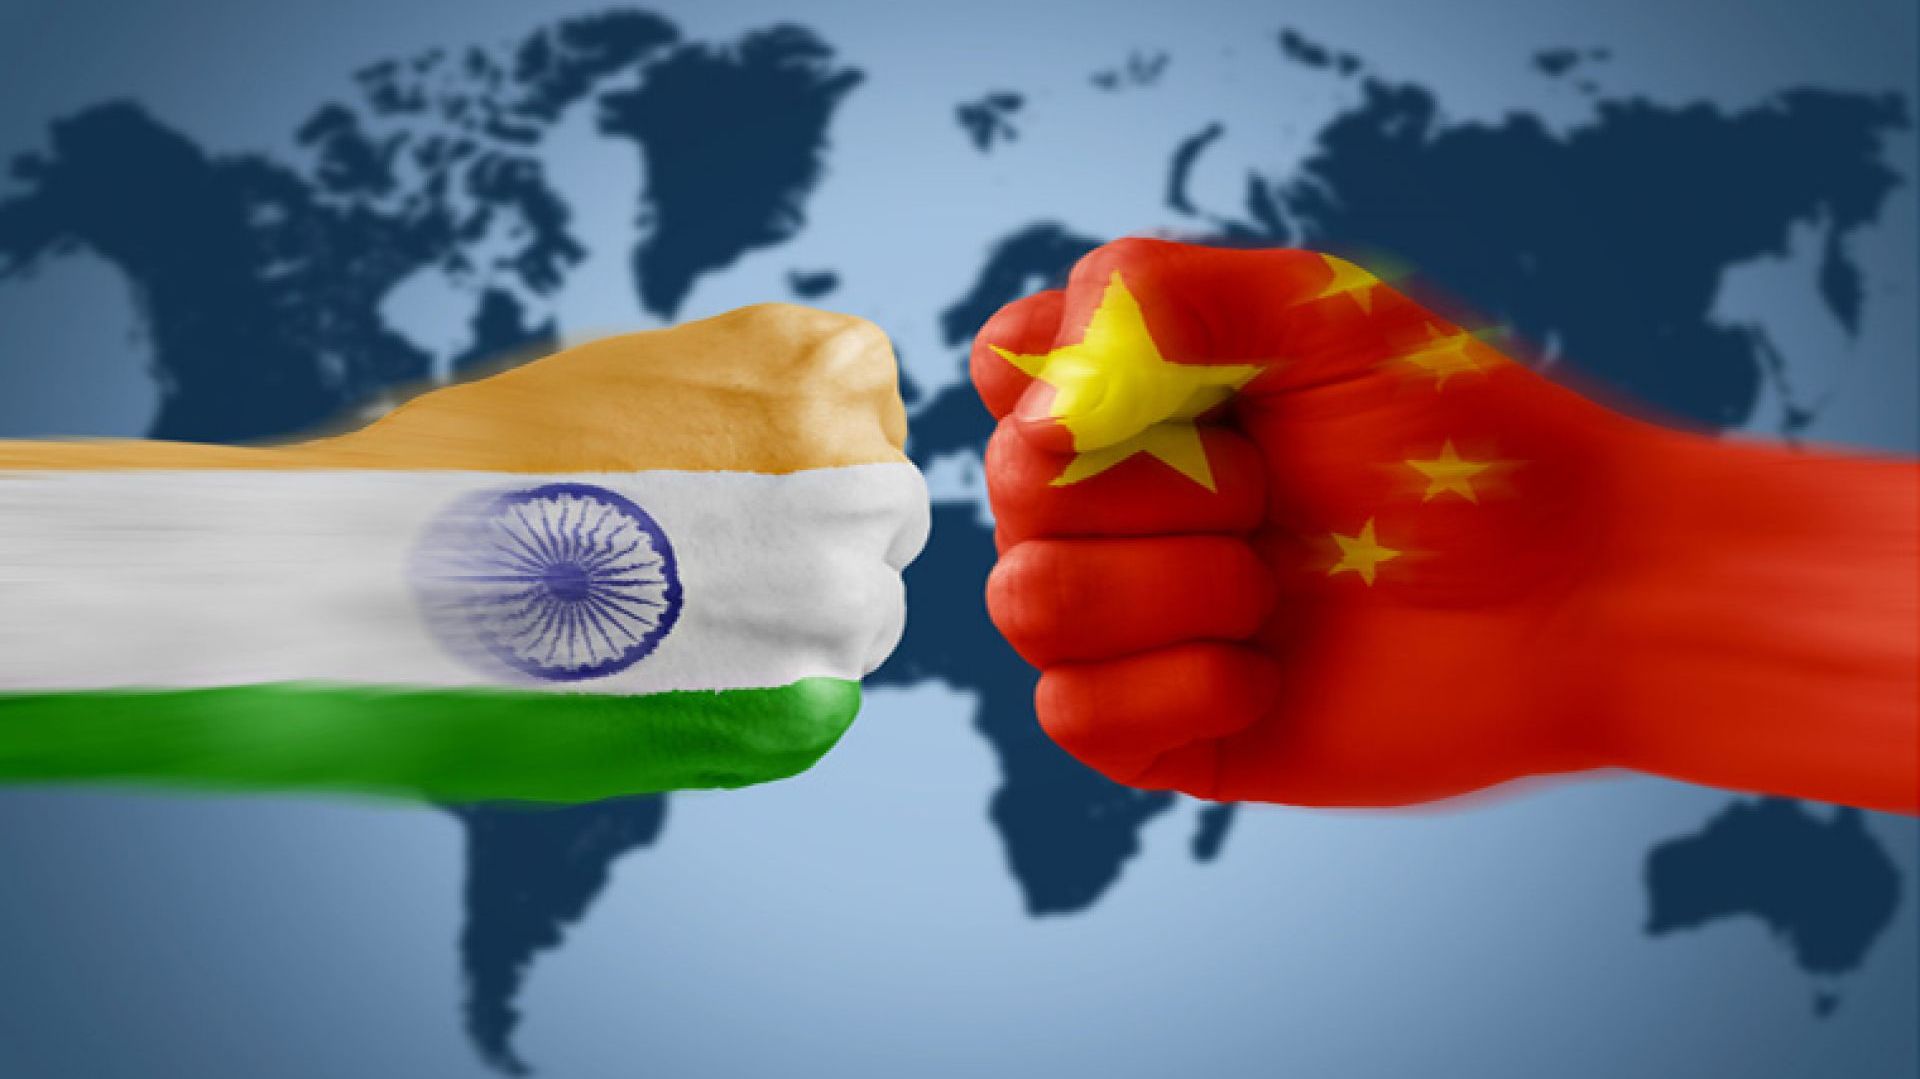 भारत-चीनको सीमामा फेरि तनाब : लद्दाखमा चीनका उत्तेजक गतिविधिको बदला लिने भारतकाे चेतावनी